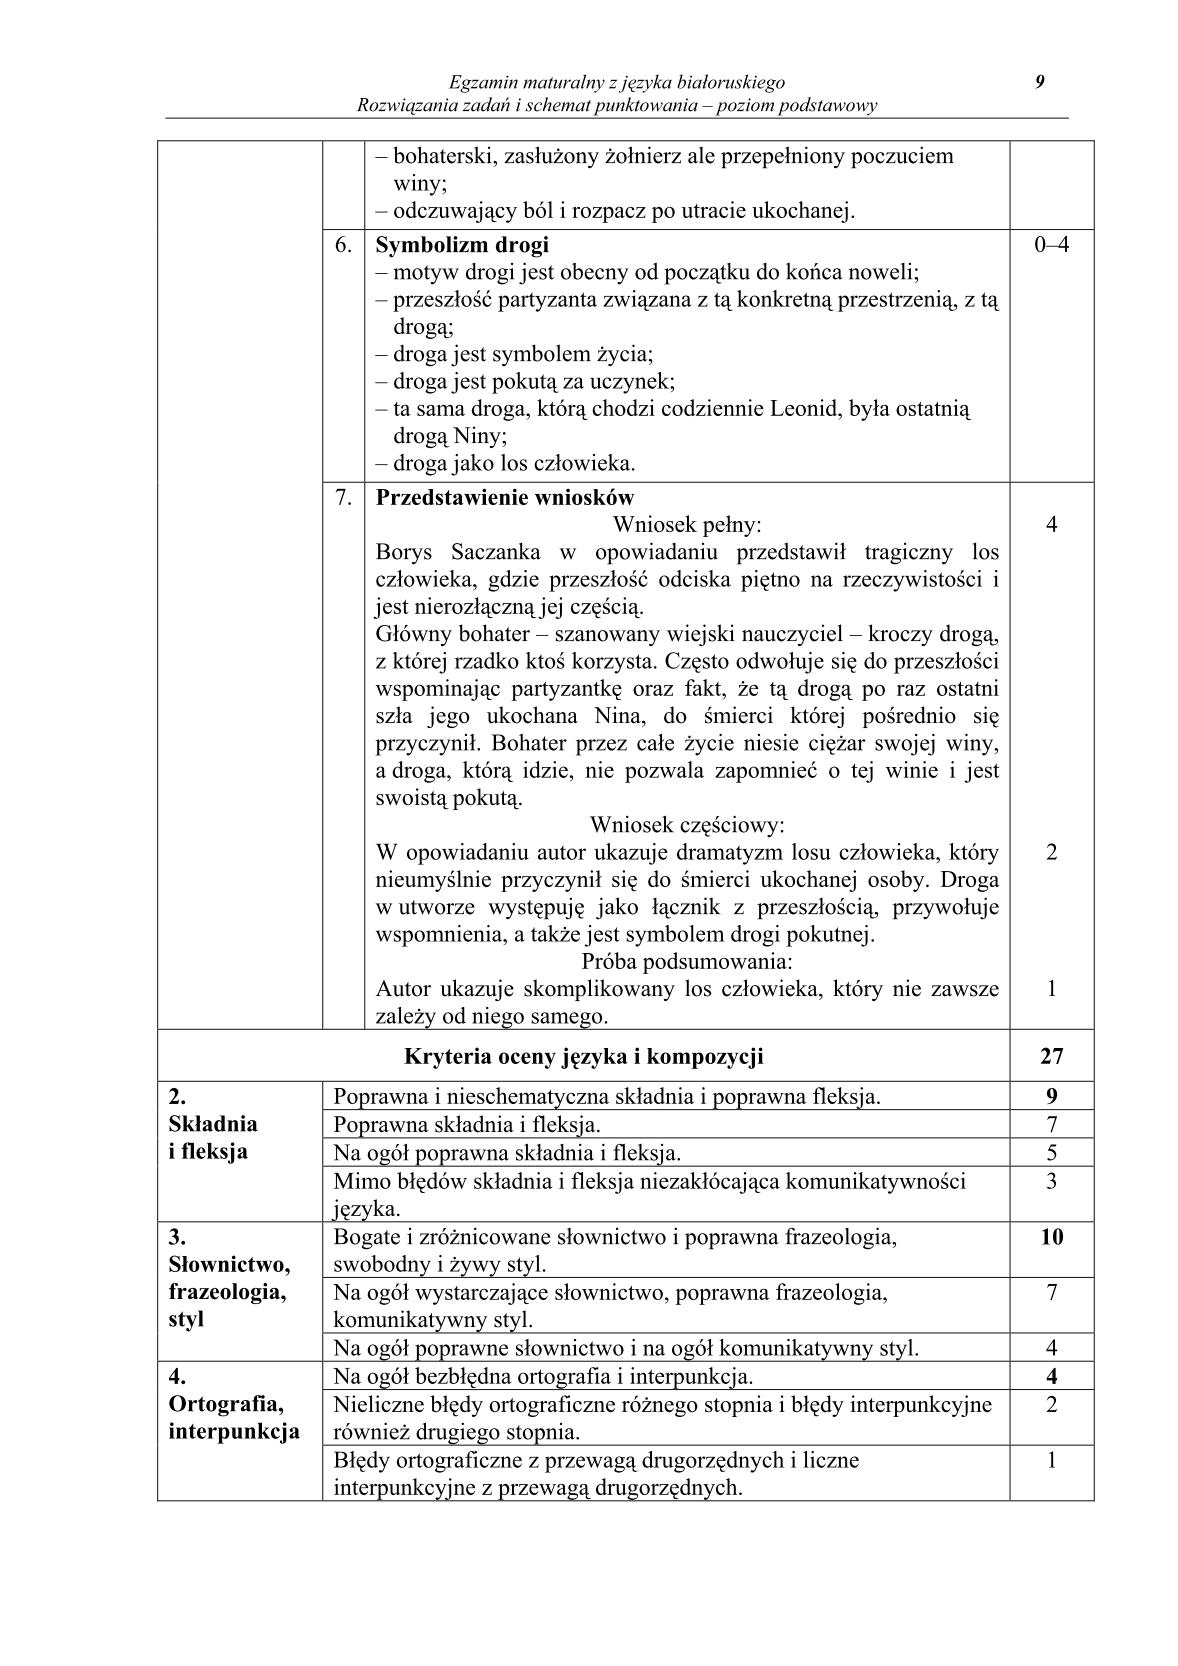 odpowiedzi-jezyk-bialoruski-poziom-podstawowy-matura-2014-str.9